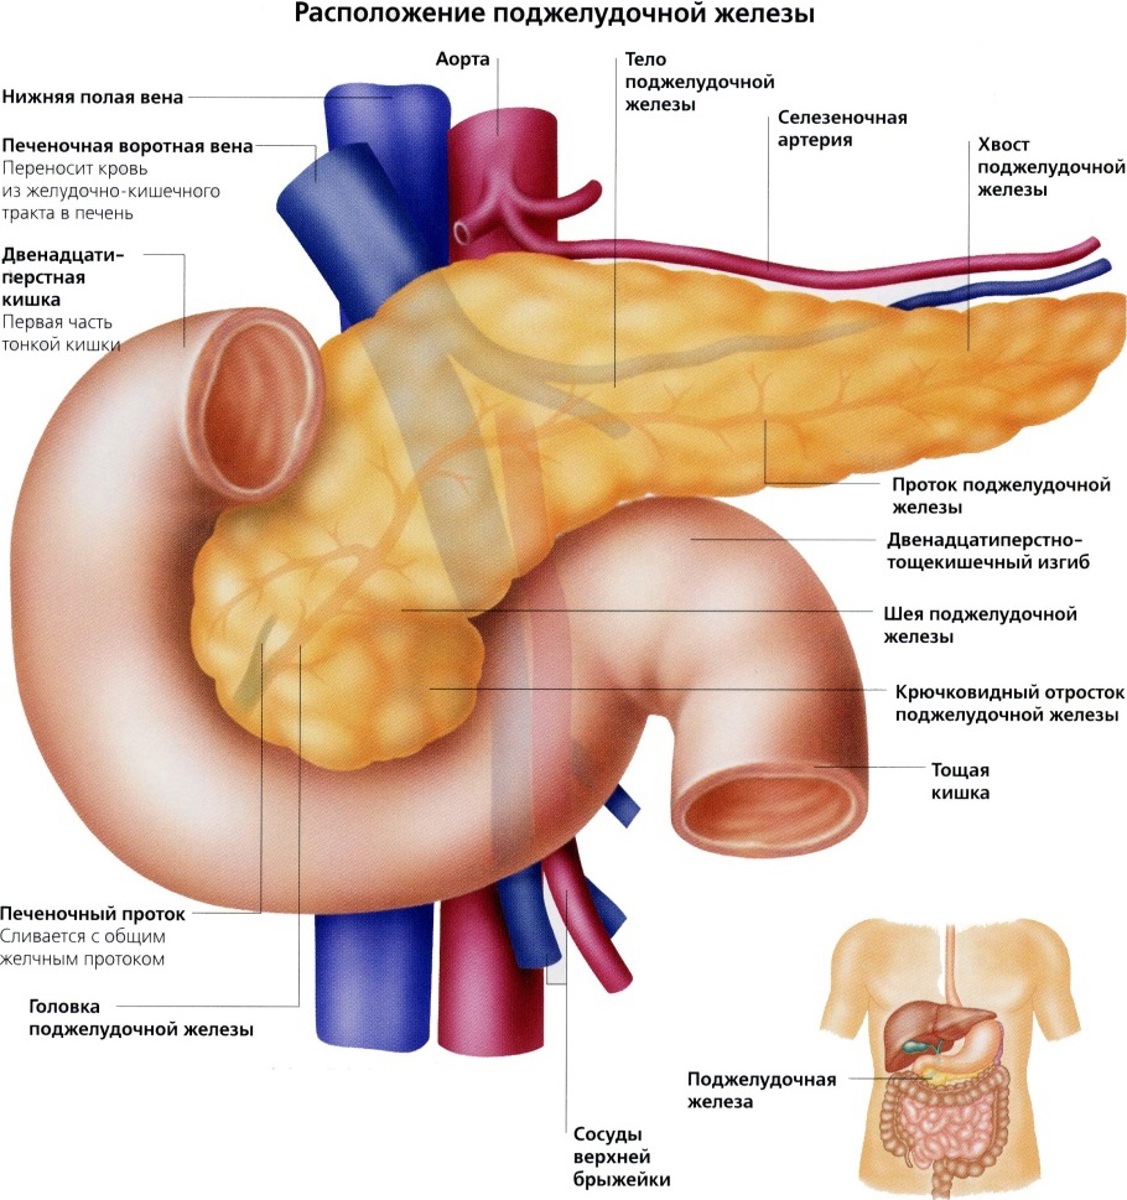 Легкие и поджелудочная железа. Поджелудочная железа анатомия человека. Анатомия поджелудочная железа расположение. Вена поджелудочной железы. Анатомическое расположение поджелудочной железы.